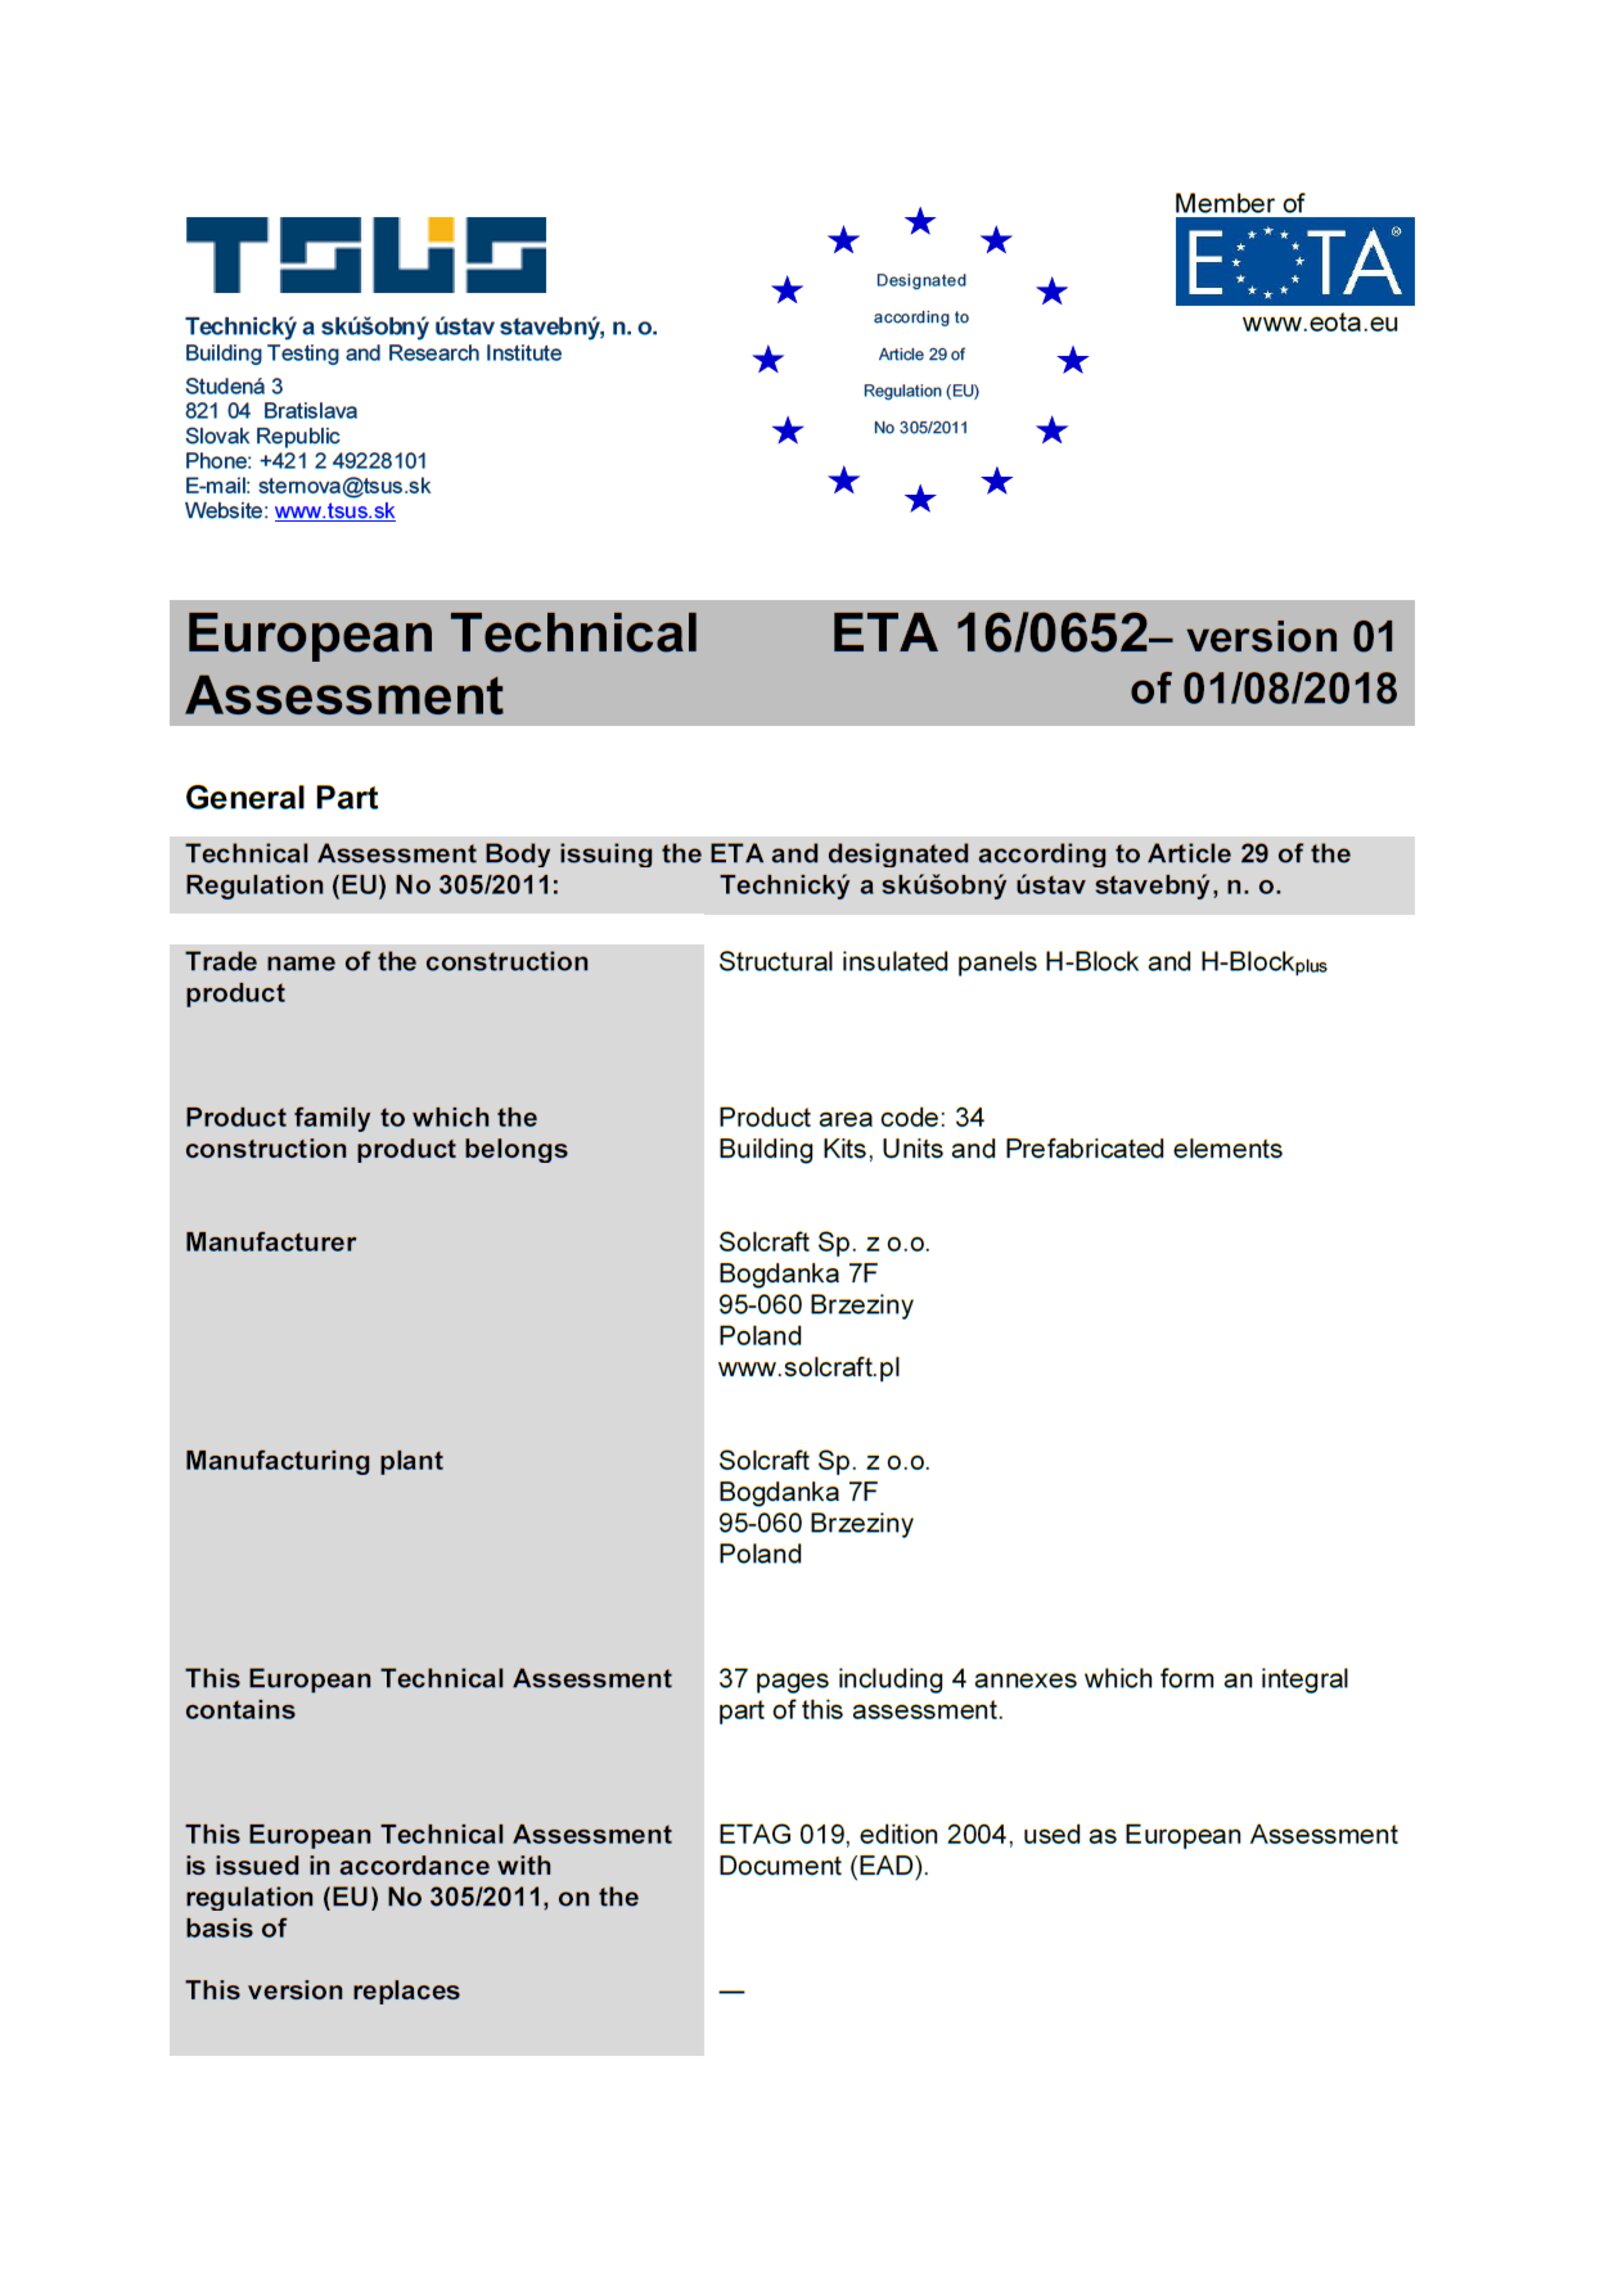 European Technical Assesment